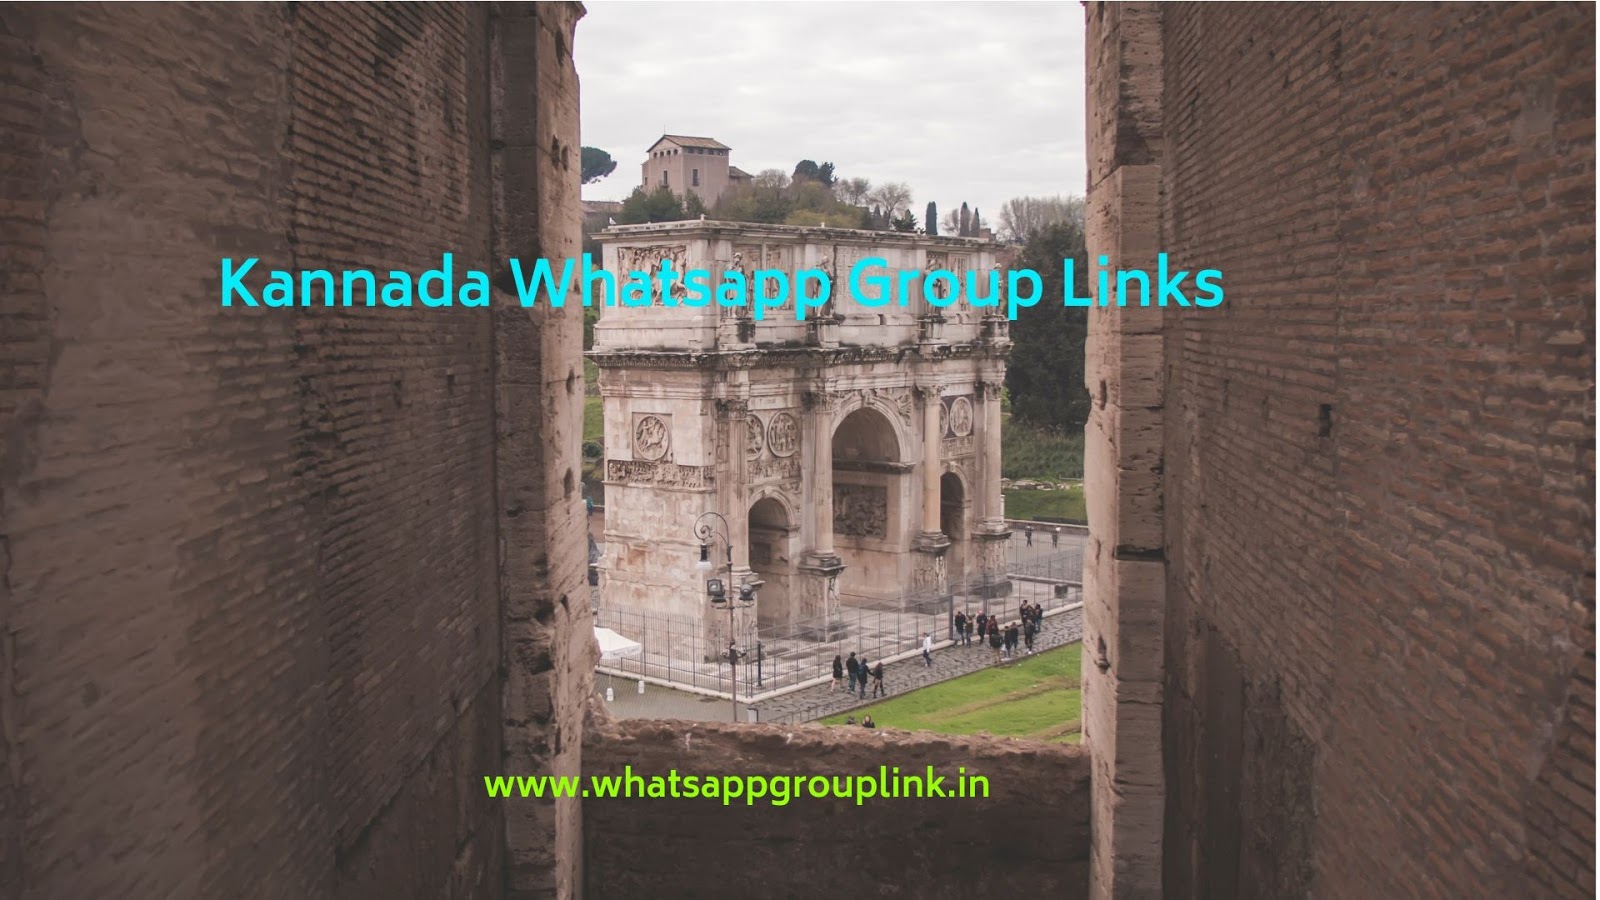 Kannada Whatsapp Group Links - WhatsappGroupLink